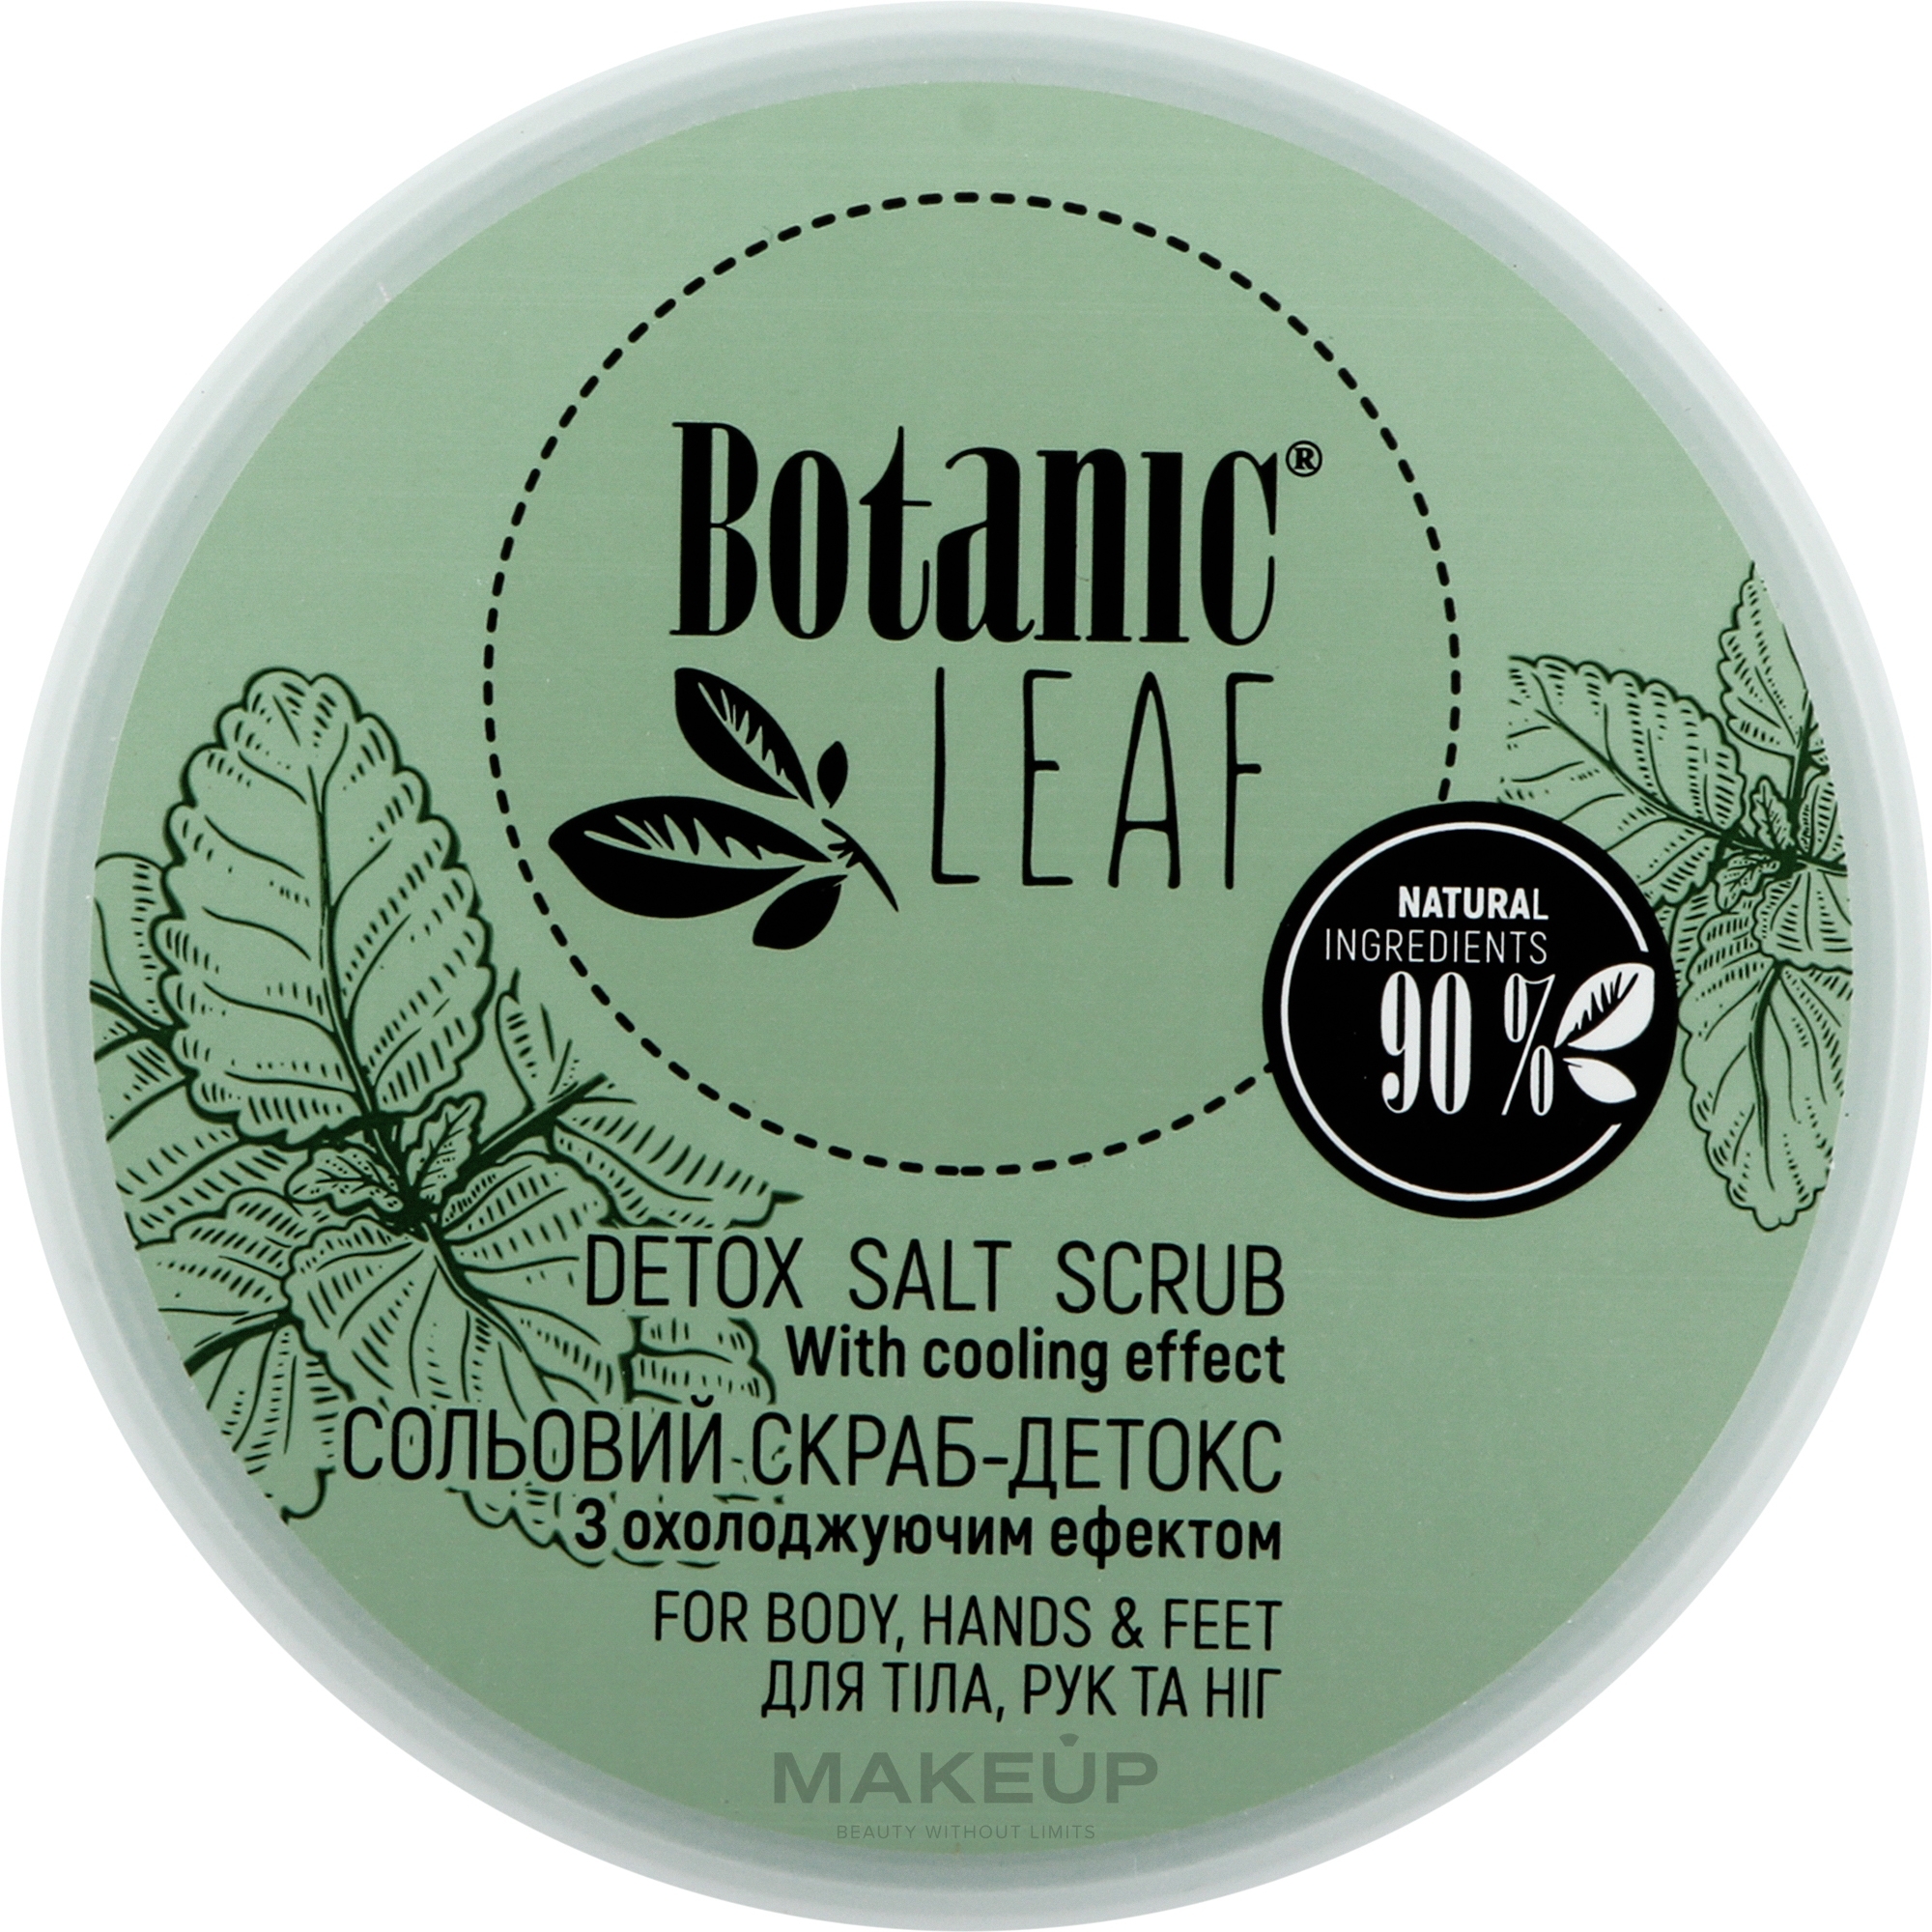 Скраб-детокс сольовий для тіла, рук та ніг - Botanic Leaf Detox Salt Scrub — фото 300g